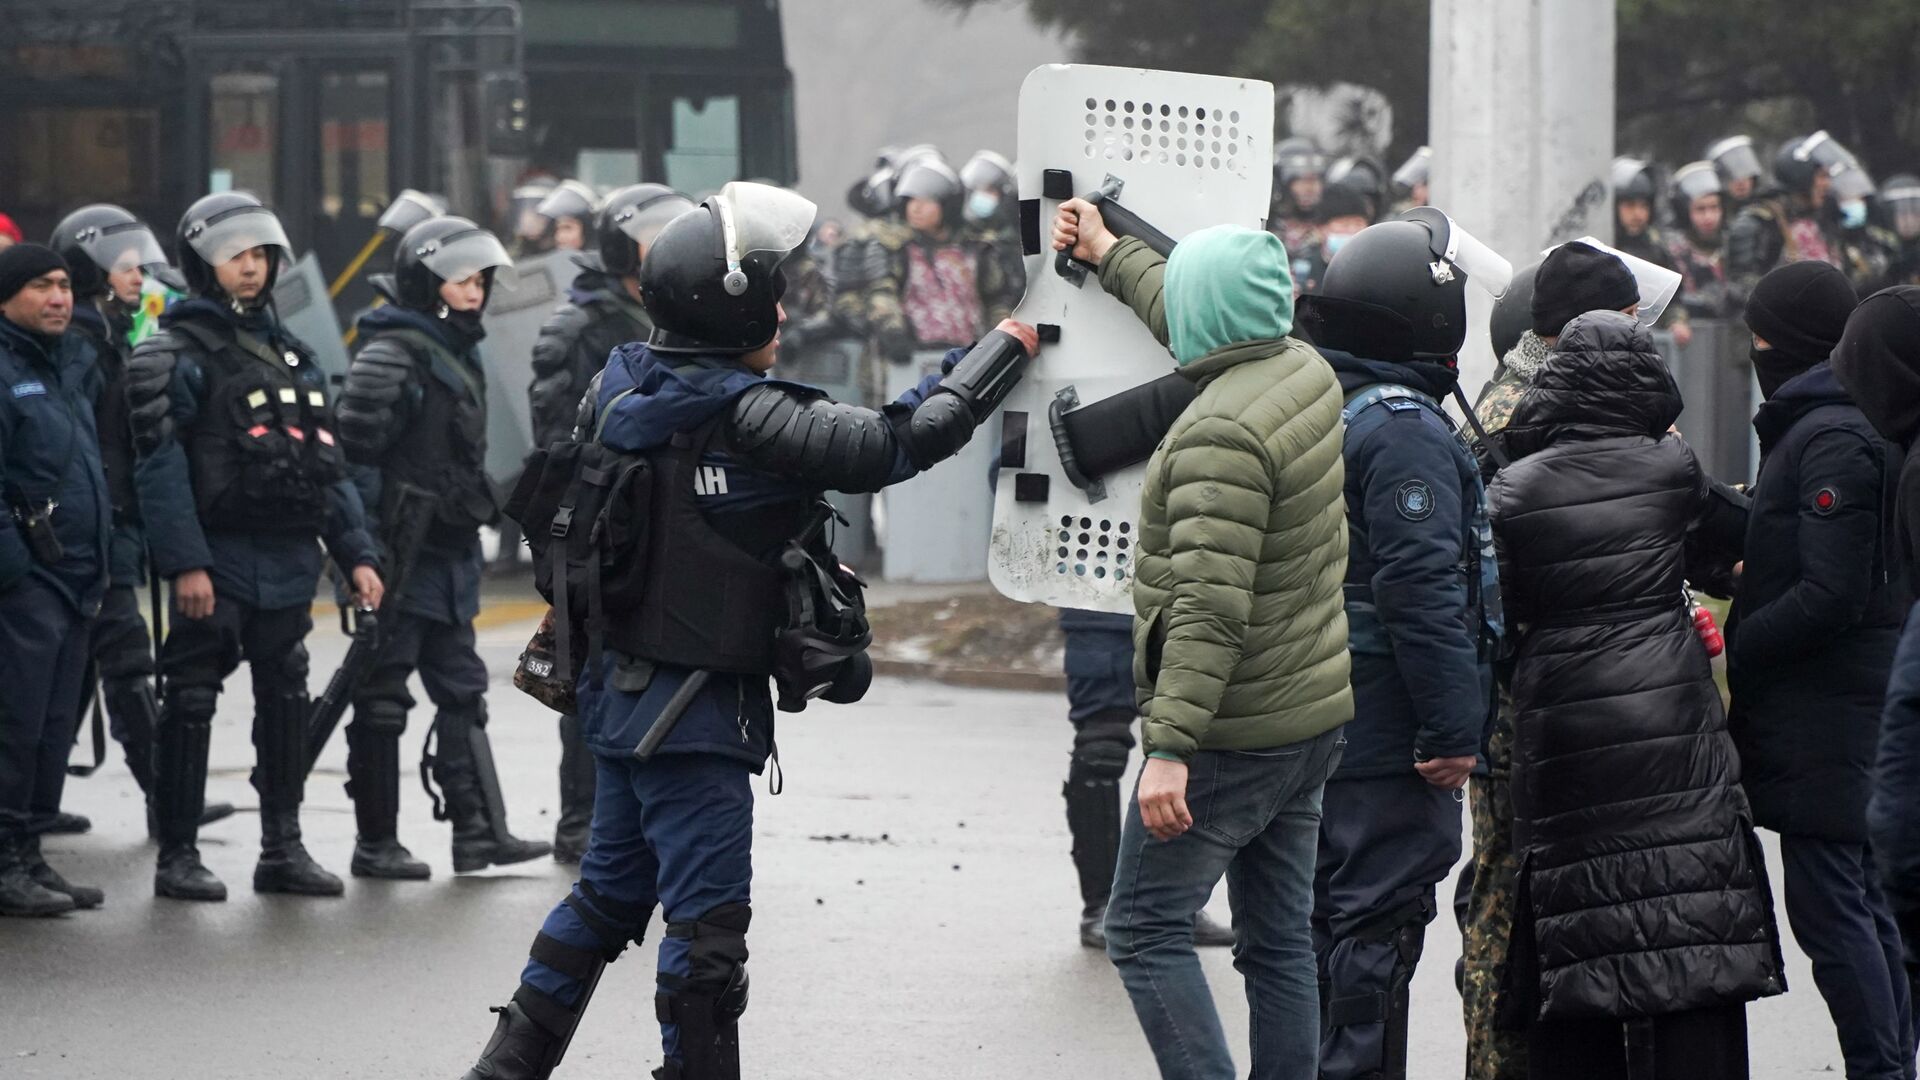 Демонстрант возвращает щит сотруднику ОМОНа во время акции протеста в Алматы, Казахстан, в среду, 5 января 2022 г.  - Sputnik Казахстан, 1920, 11.07.2022